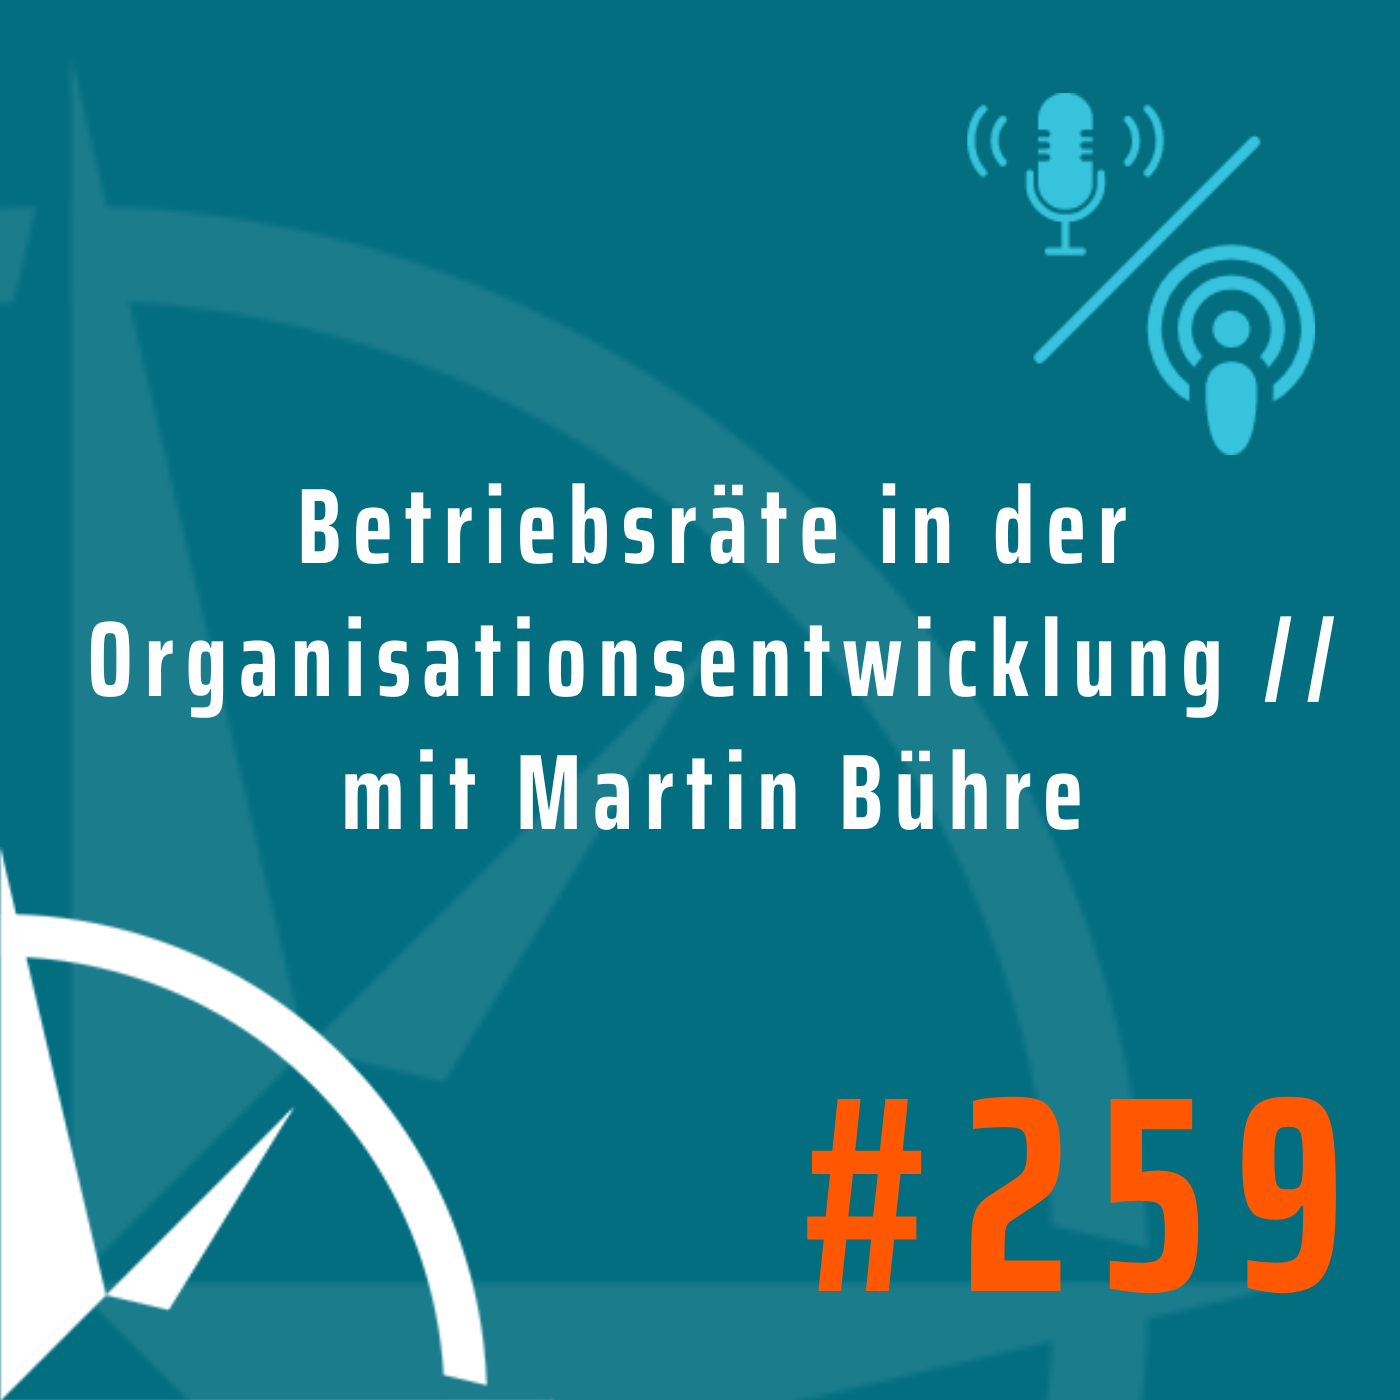 Die Rolle von Betriebsräten in der Organisationsentwicklung // mit Martin Bühre